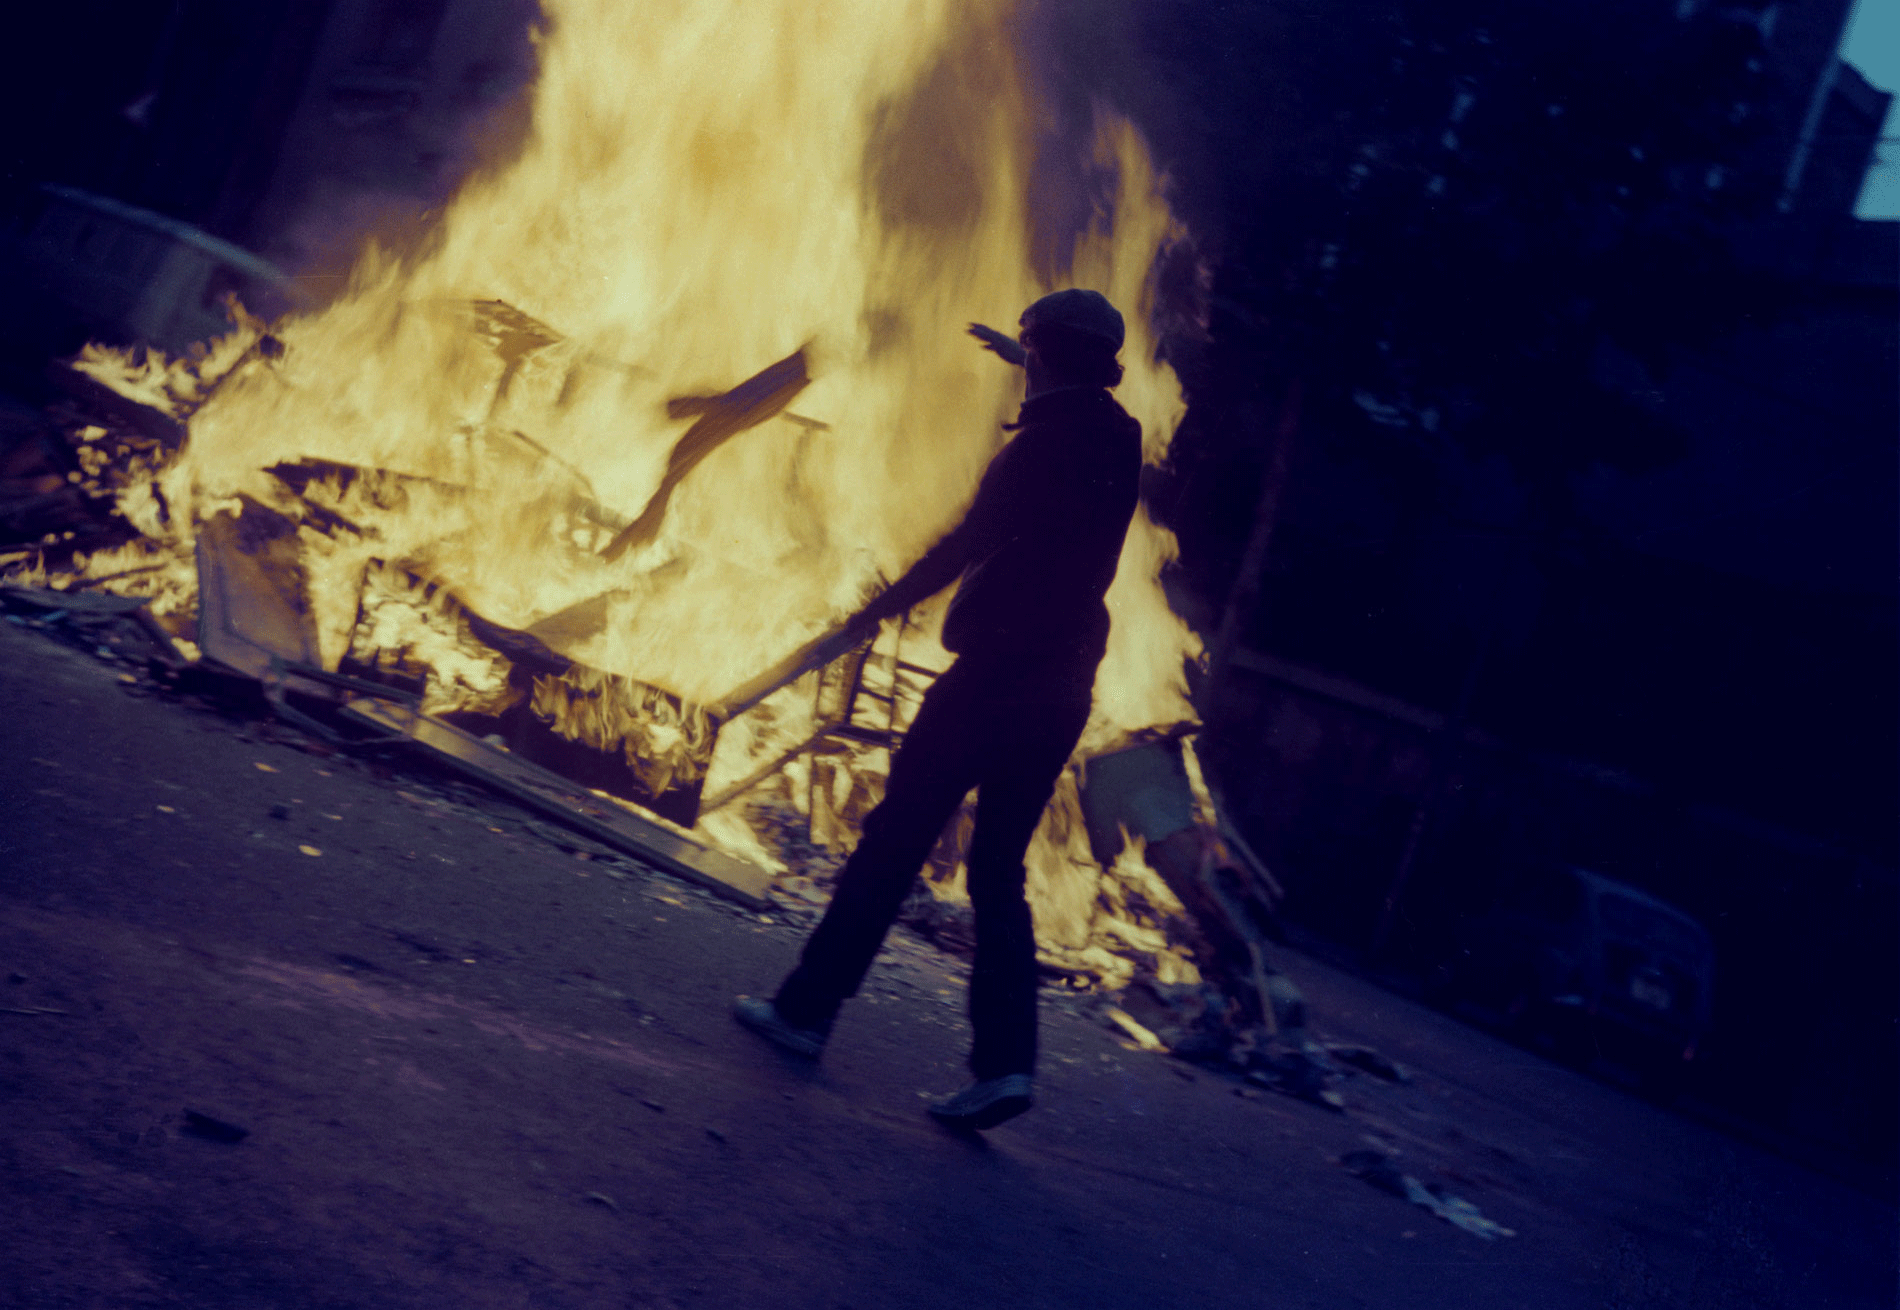 Autorretrato quemando cosas, 1981. Nexus. From the serie Exilios. 48,92 x 70 cm.